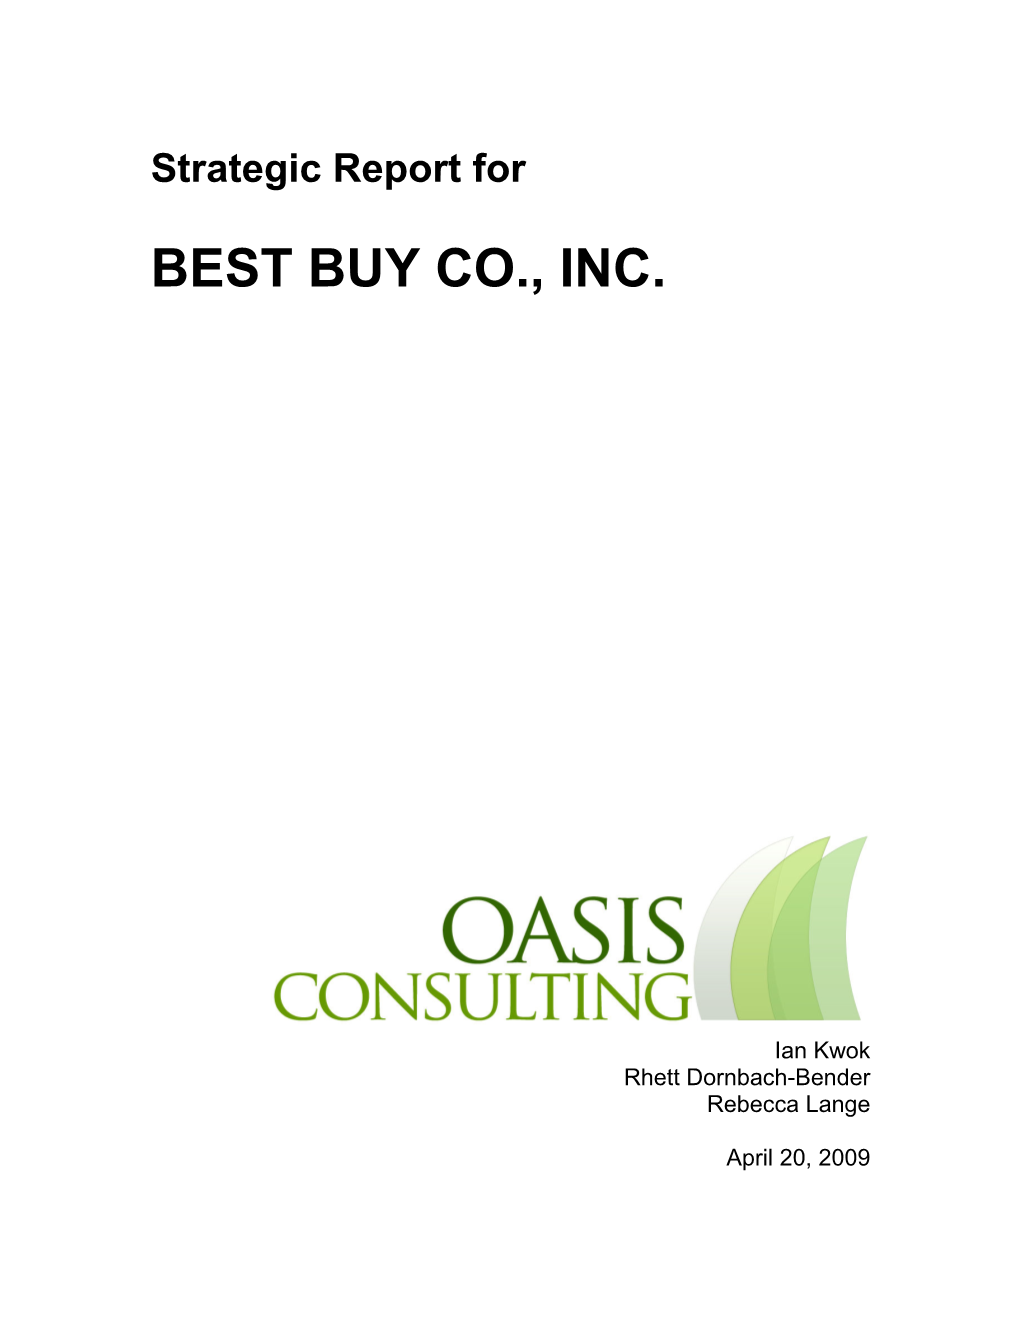 Best Buy Co., Inc